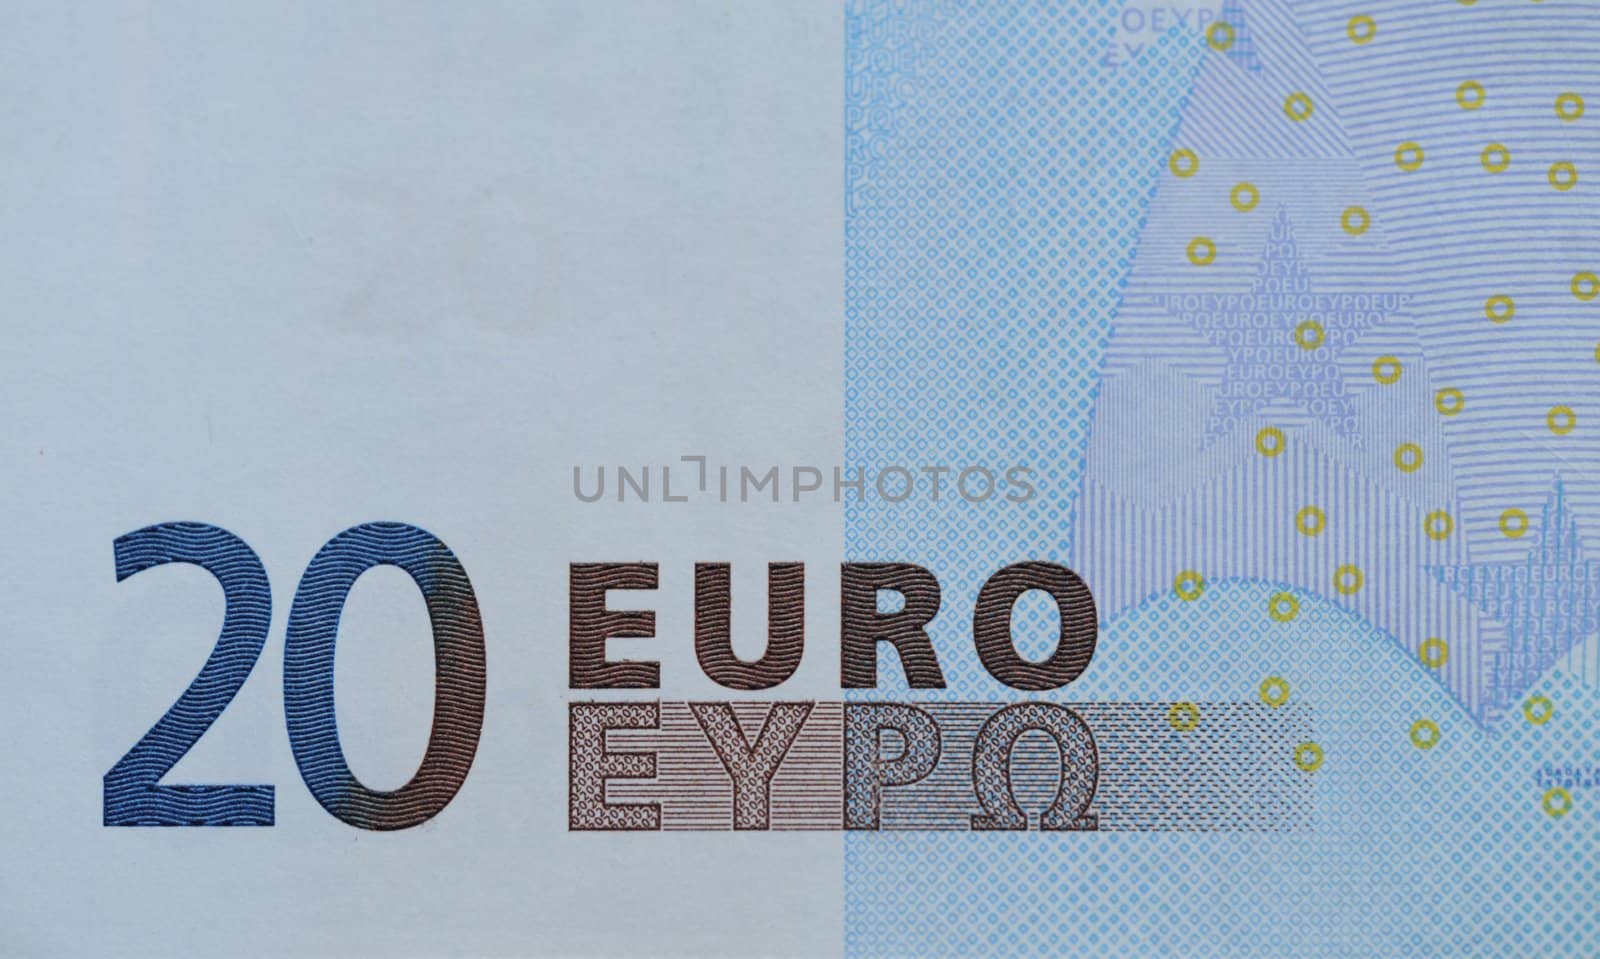 Twenty Euro. by gkuna